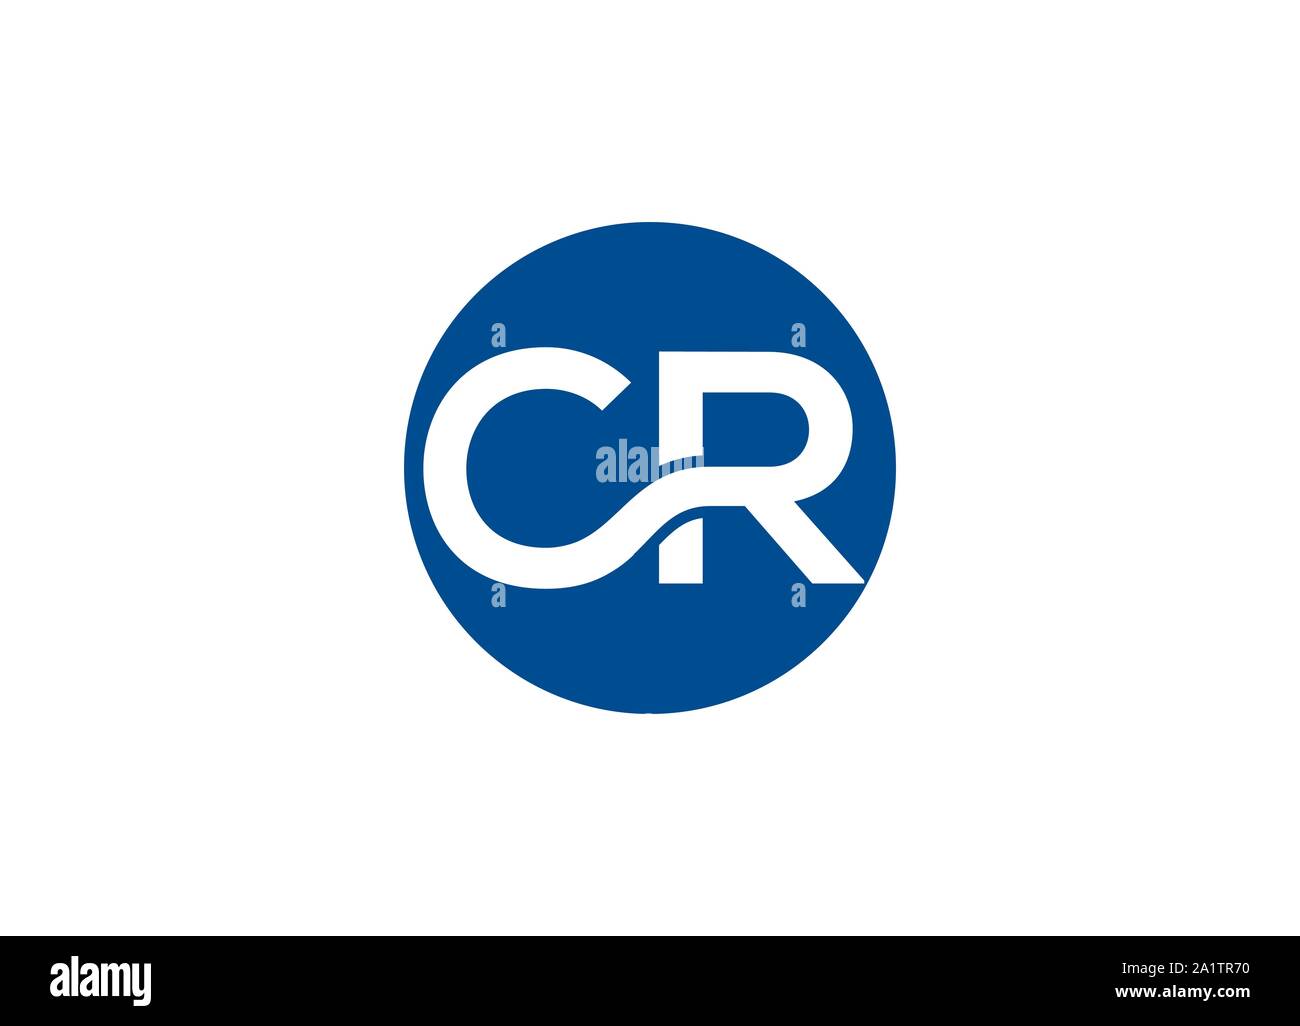 CR letter mark logo, CR logo, Stock Vector